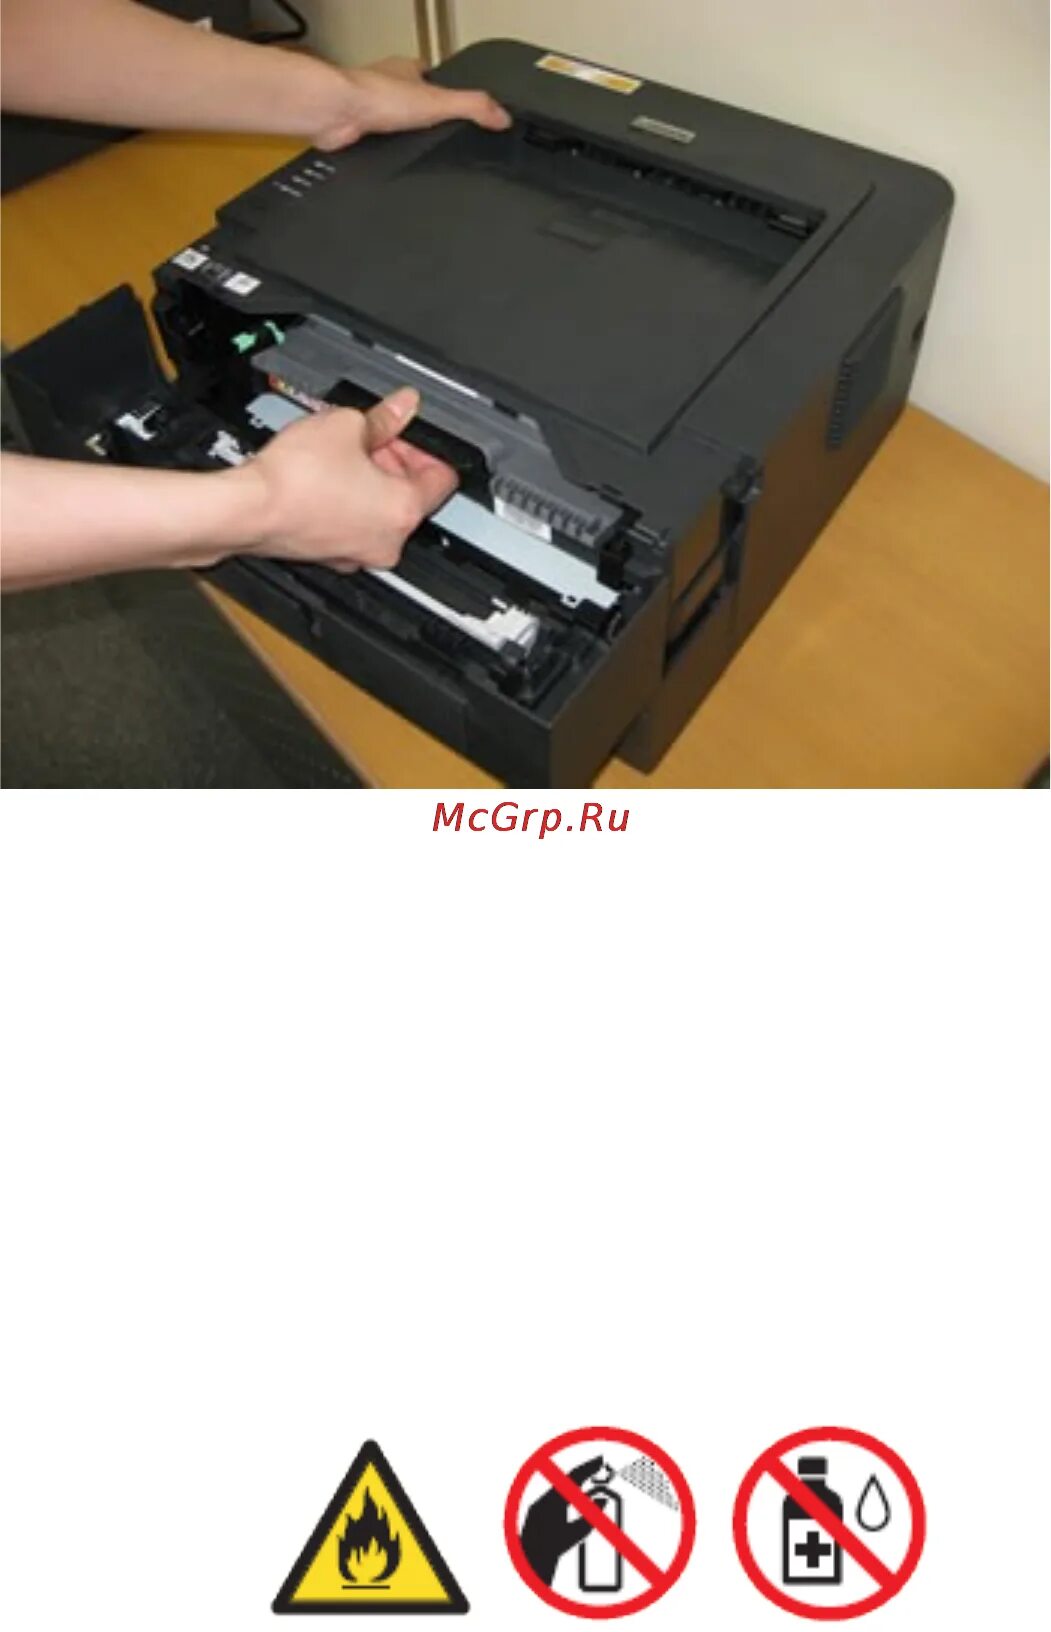 Принтер бразер замените тонер. Принтер Бразер 2132. Картридж brother hl-l23400wr. Принтер маркировочный для кабеля brother hl-2130. DCP-7060 сканер в сборе.